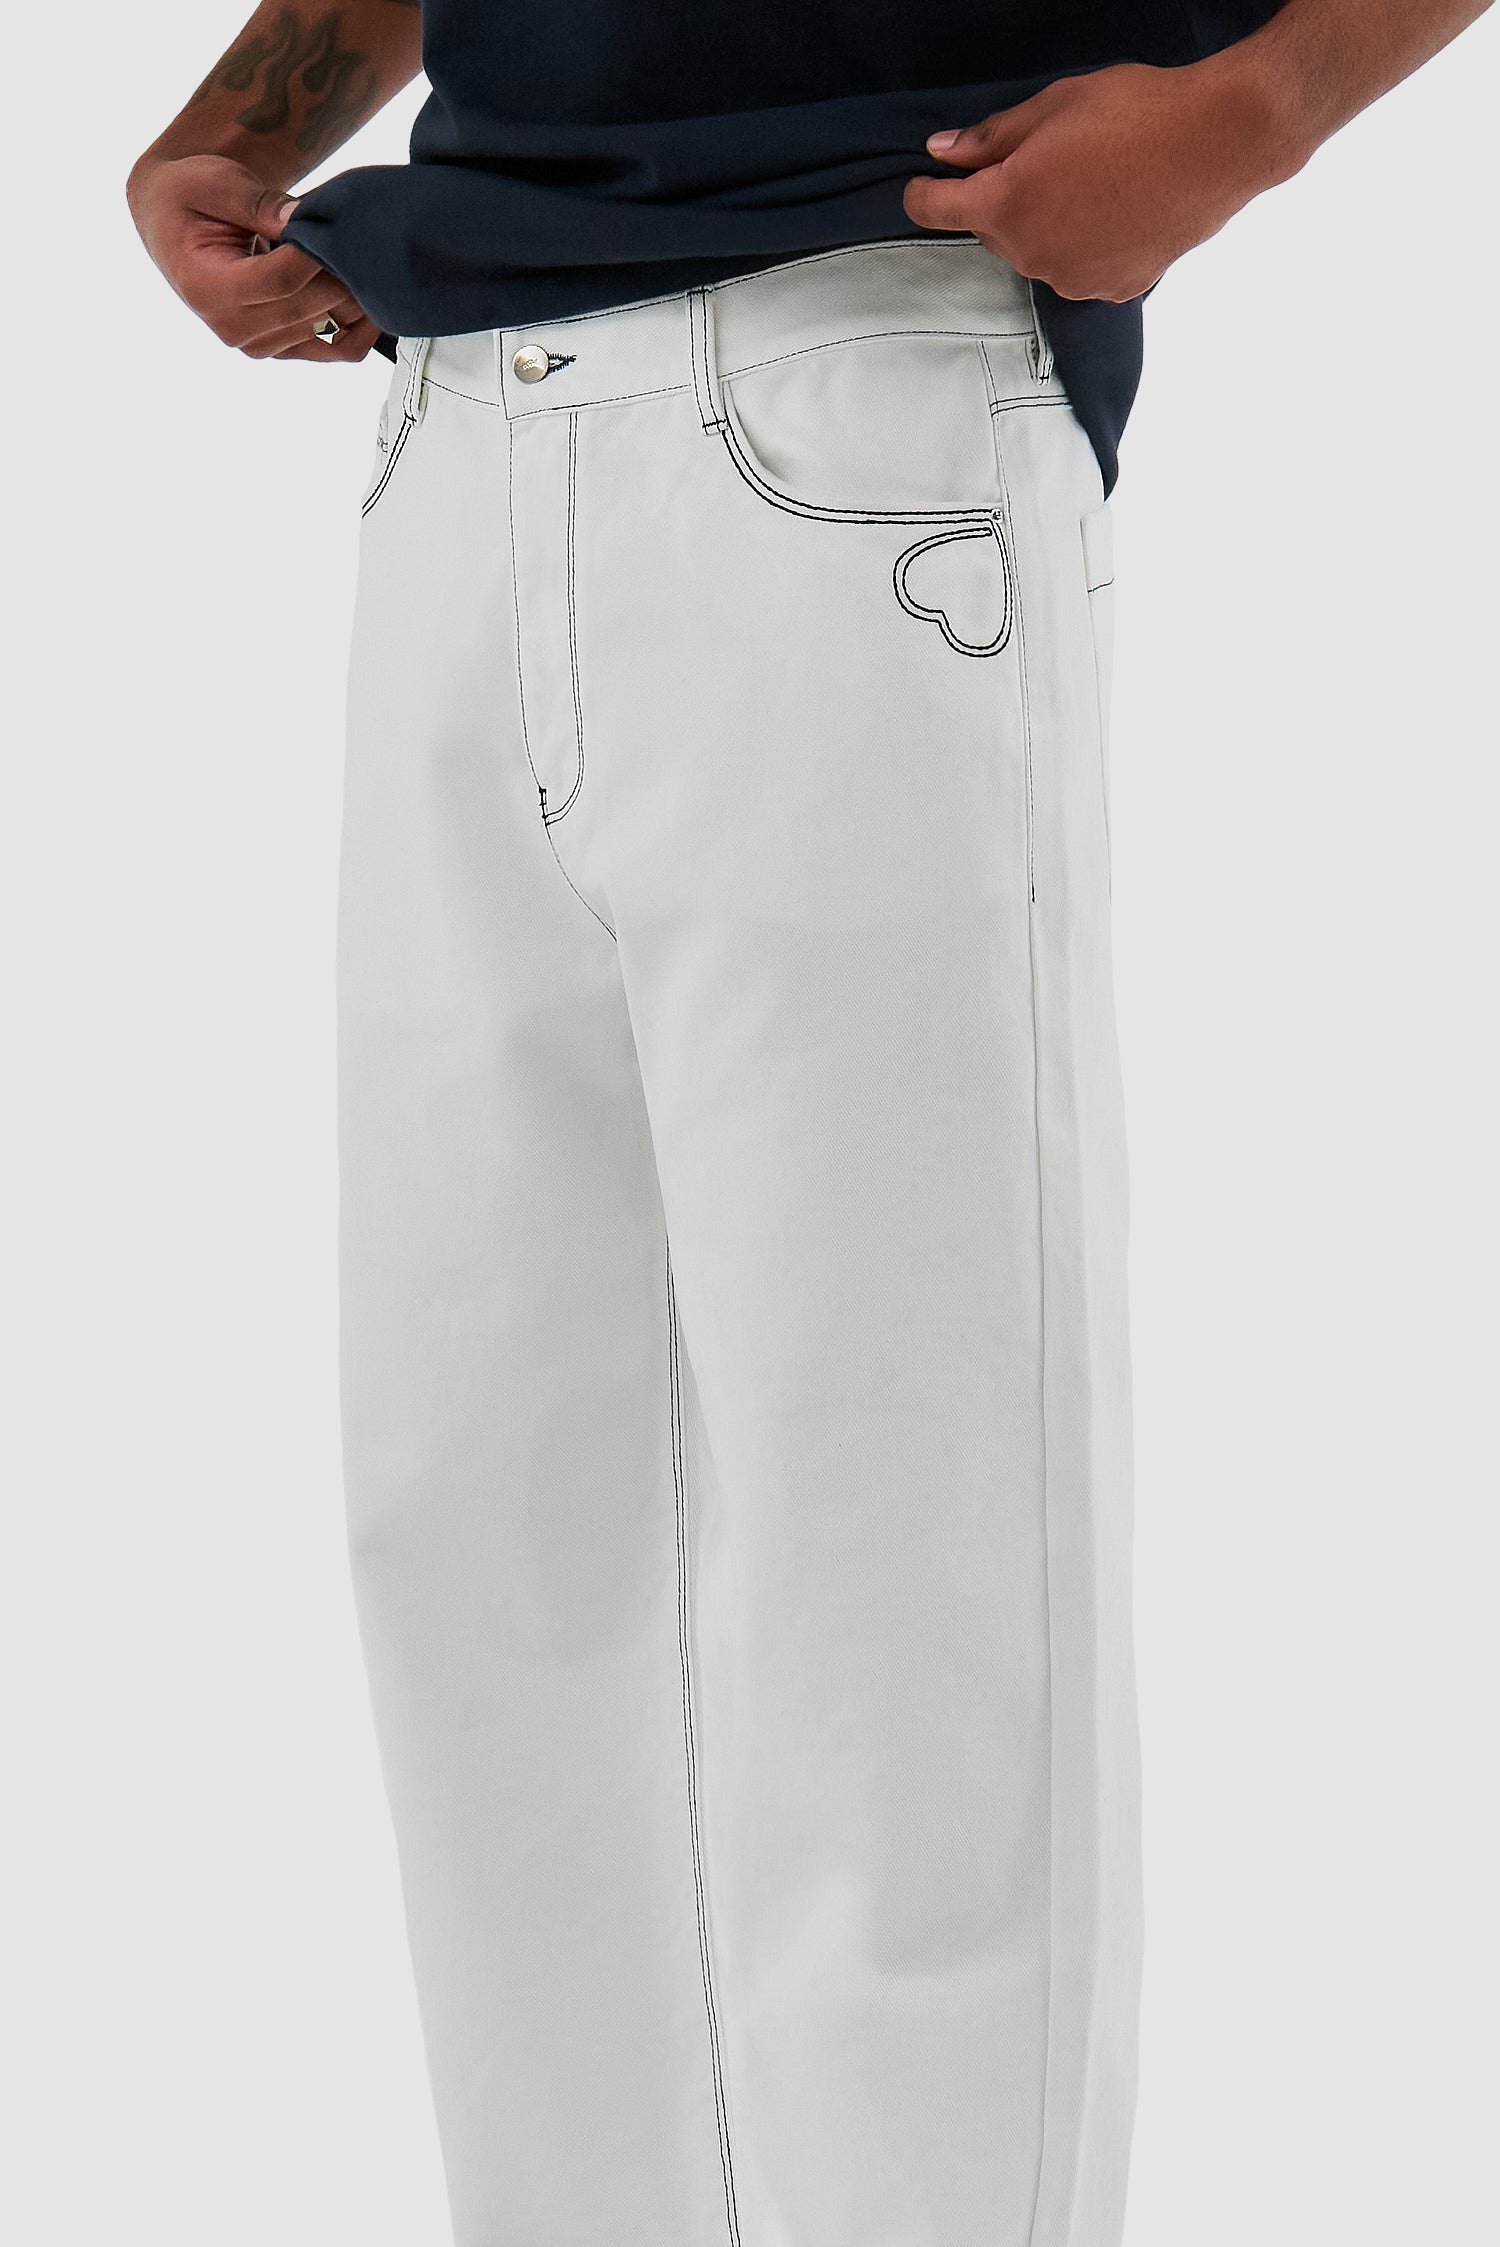 Pantalon Poage Heart Detail - Blanc